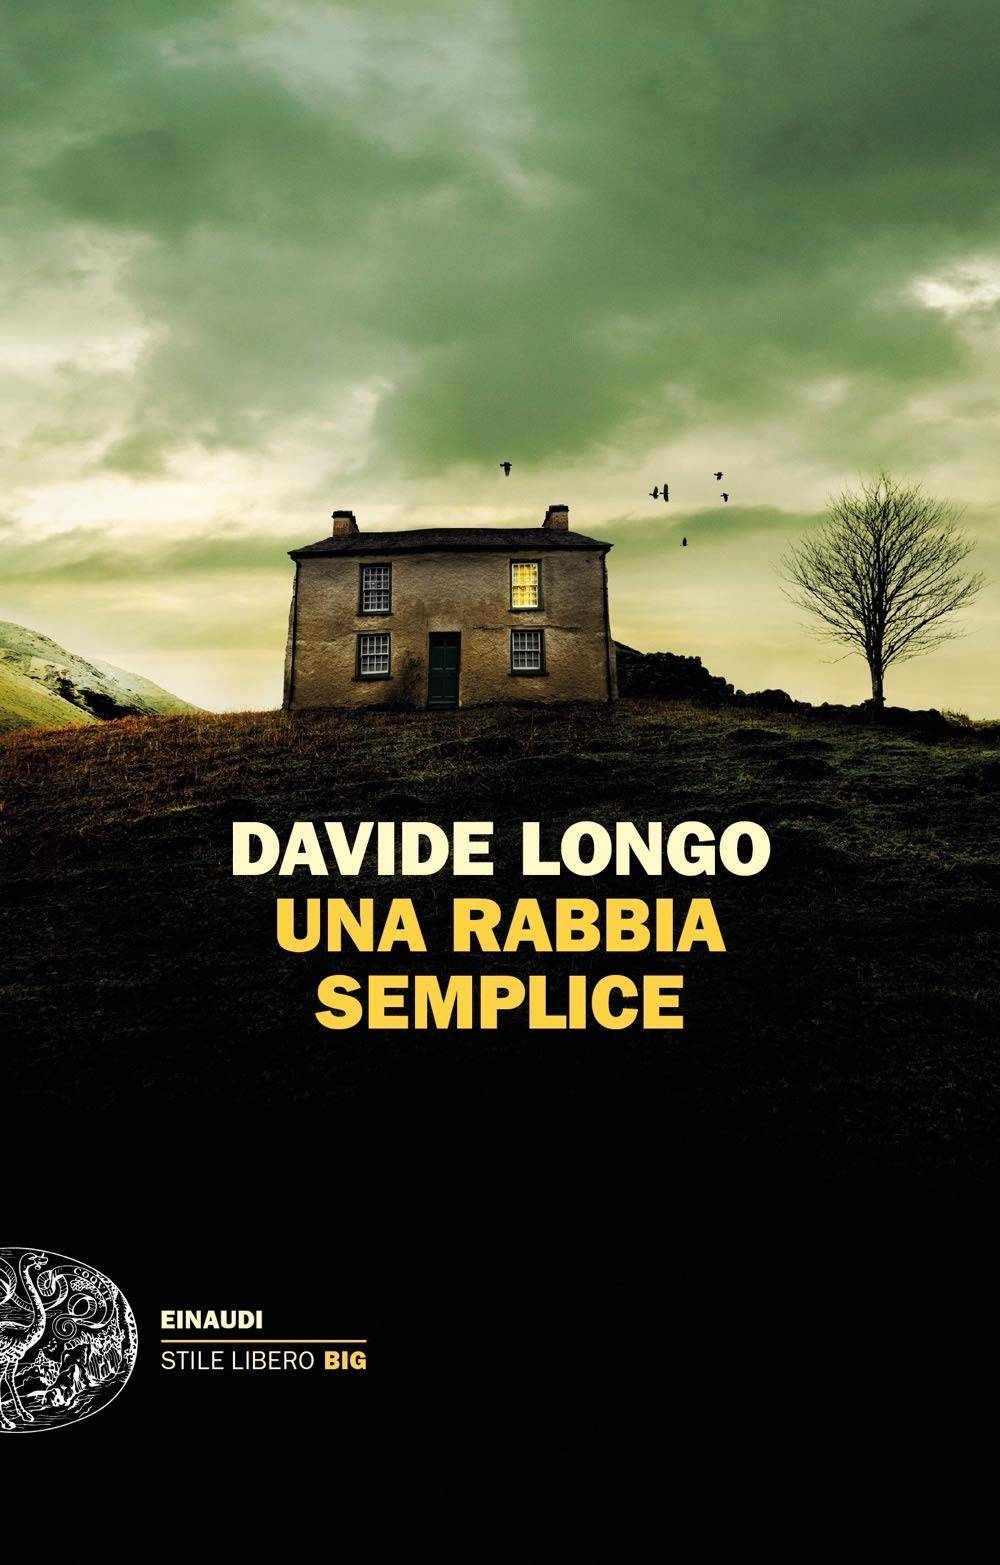 Baricco, Lucarelli e il bel "giallo" (molto intricato) di Davide Longo